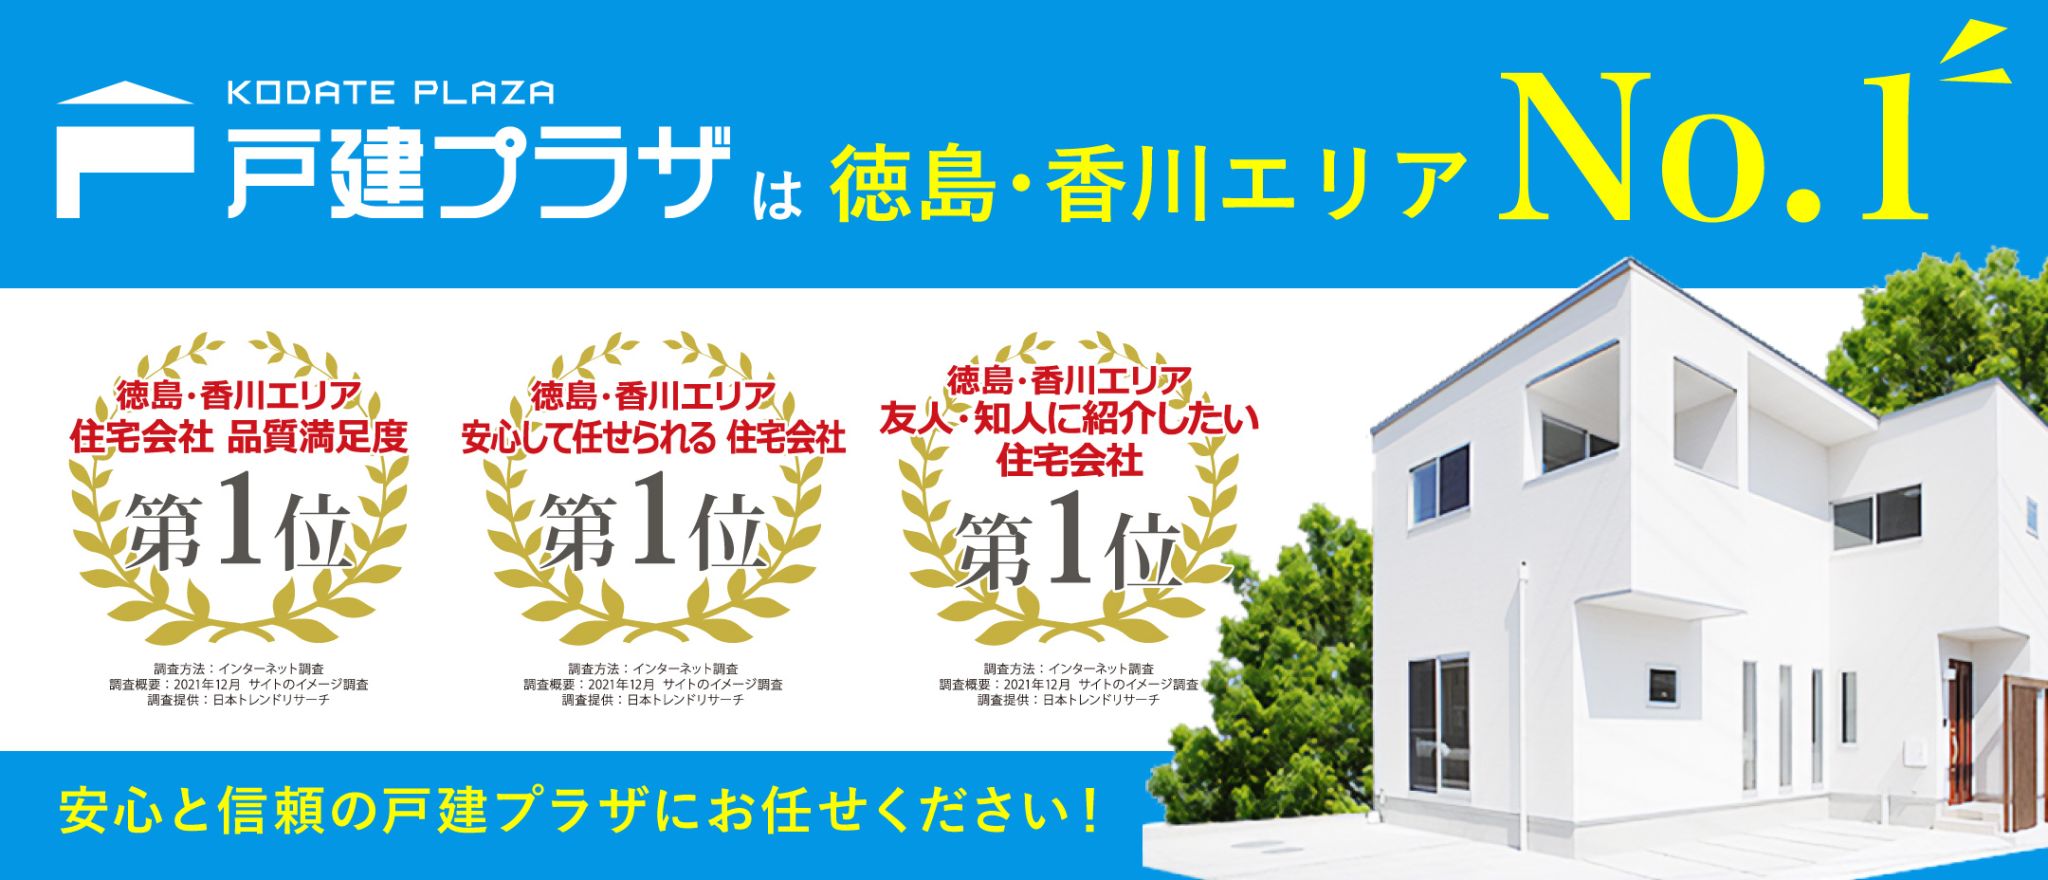 戸建プラザは徳島・香川エリアNo.1の住宅会社です